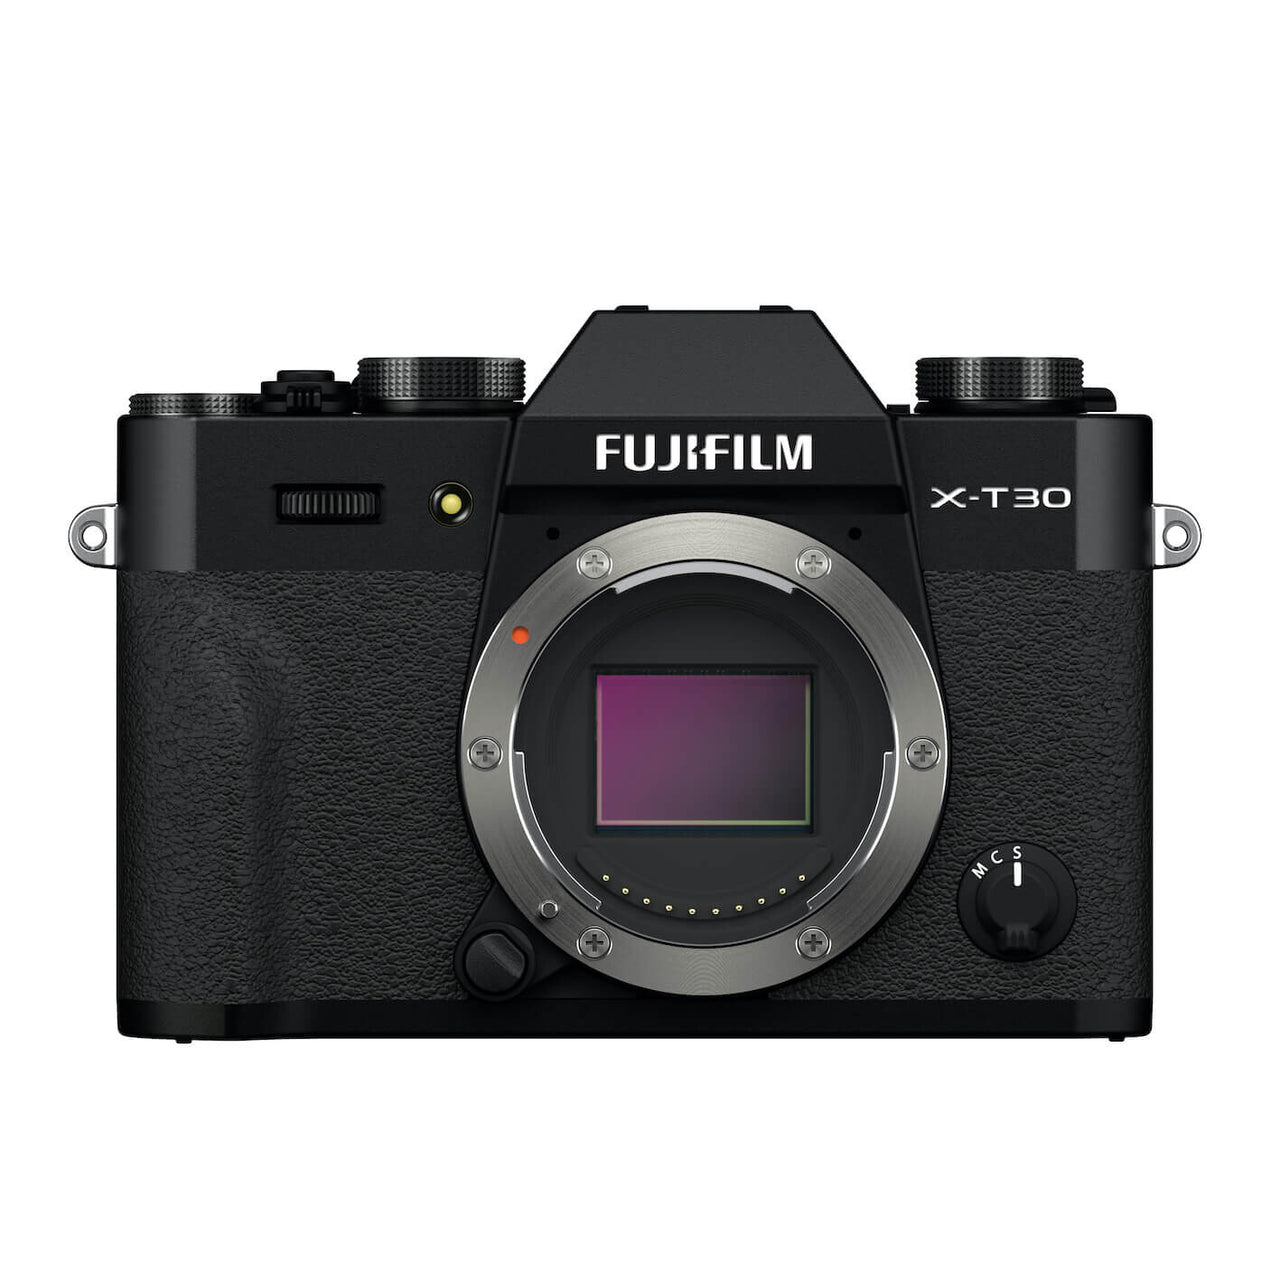 Fujifilm X-T30 II Black Body - 4 Jahre Swiss Garantie